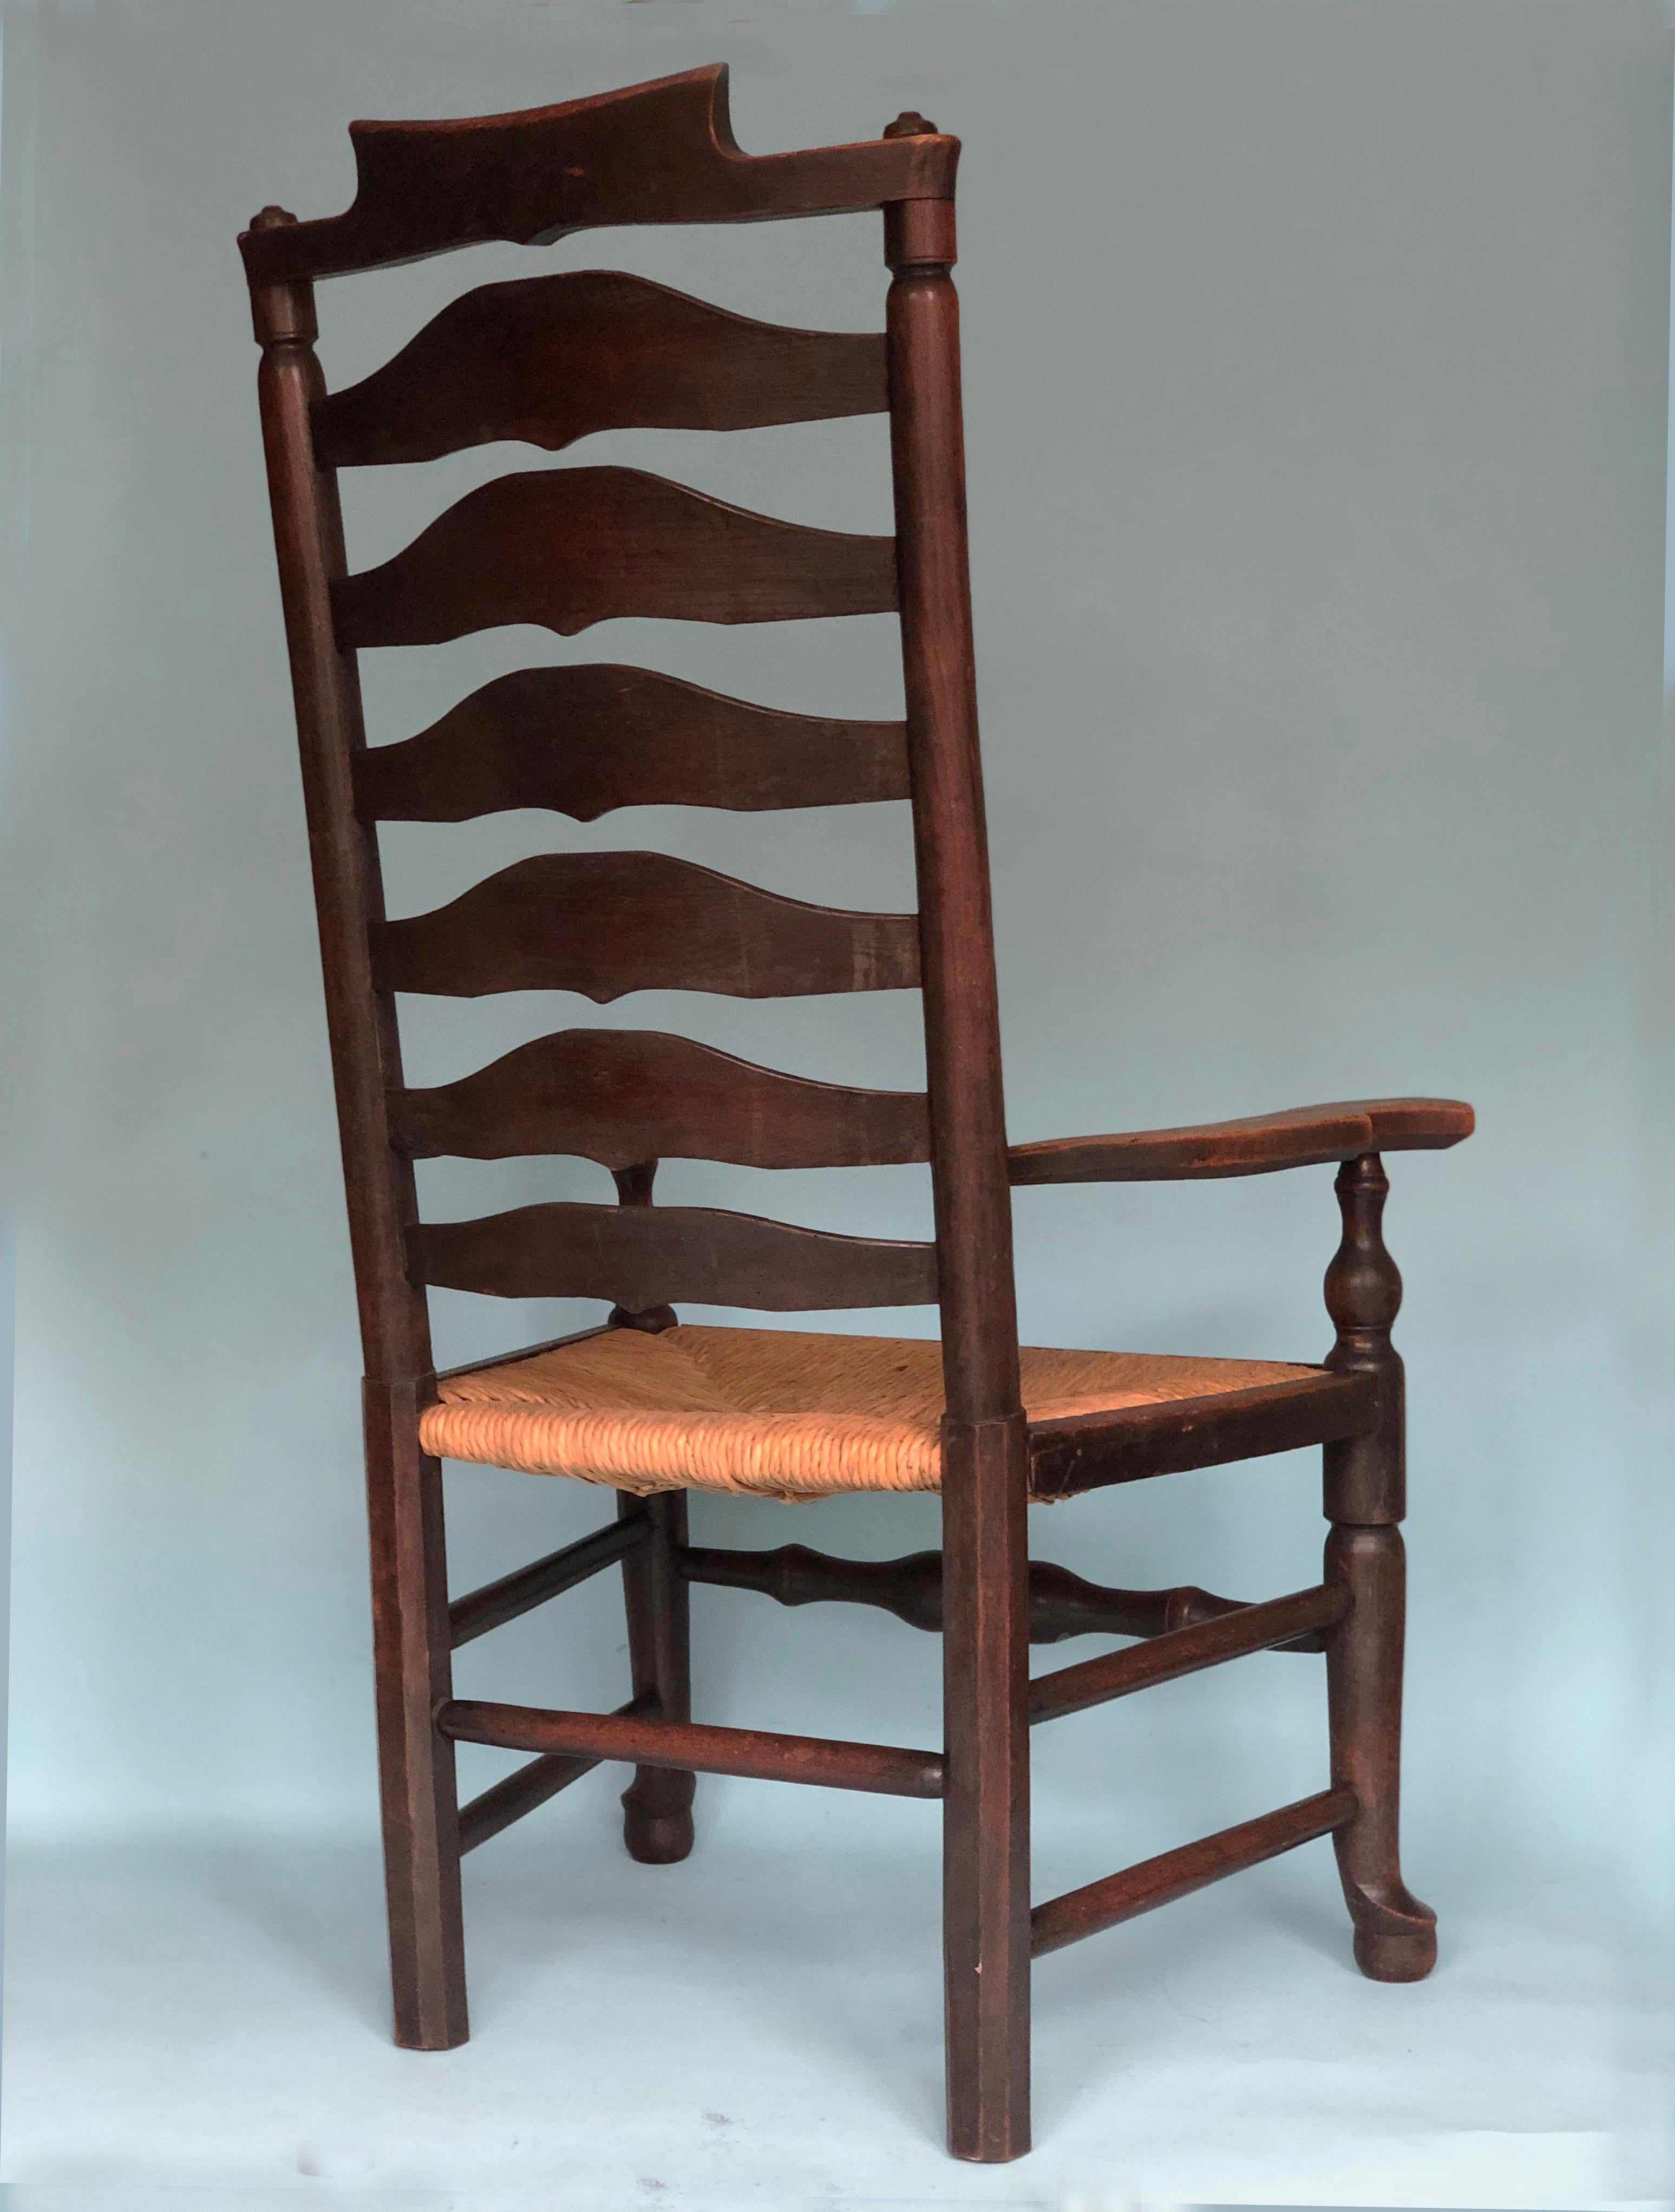 Fauteuil anglais à dossier en échelle, fabriqué à la fin du 19e siècle. La chaise à haut dossier (7 